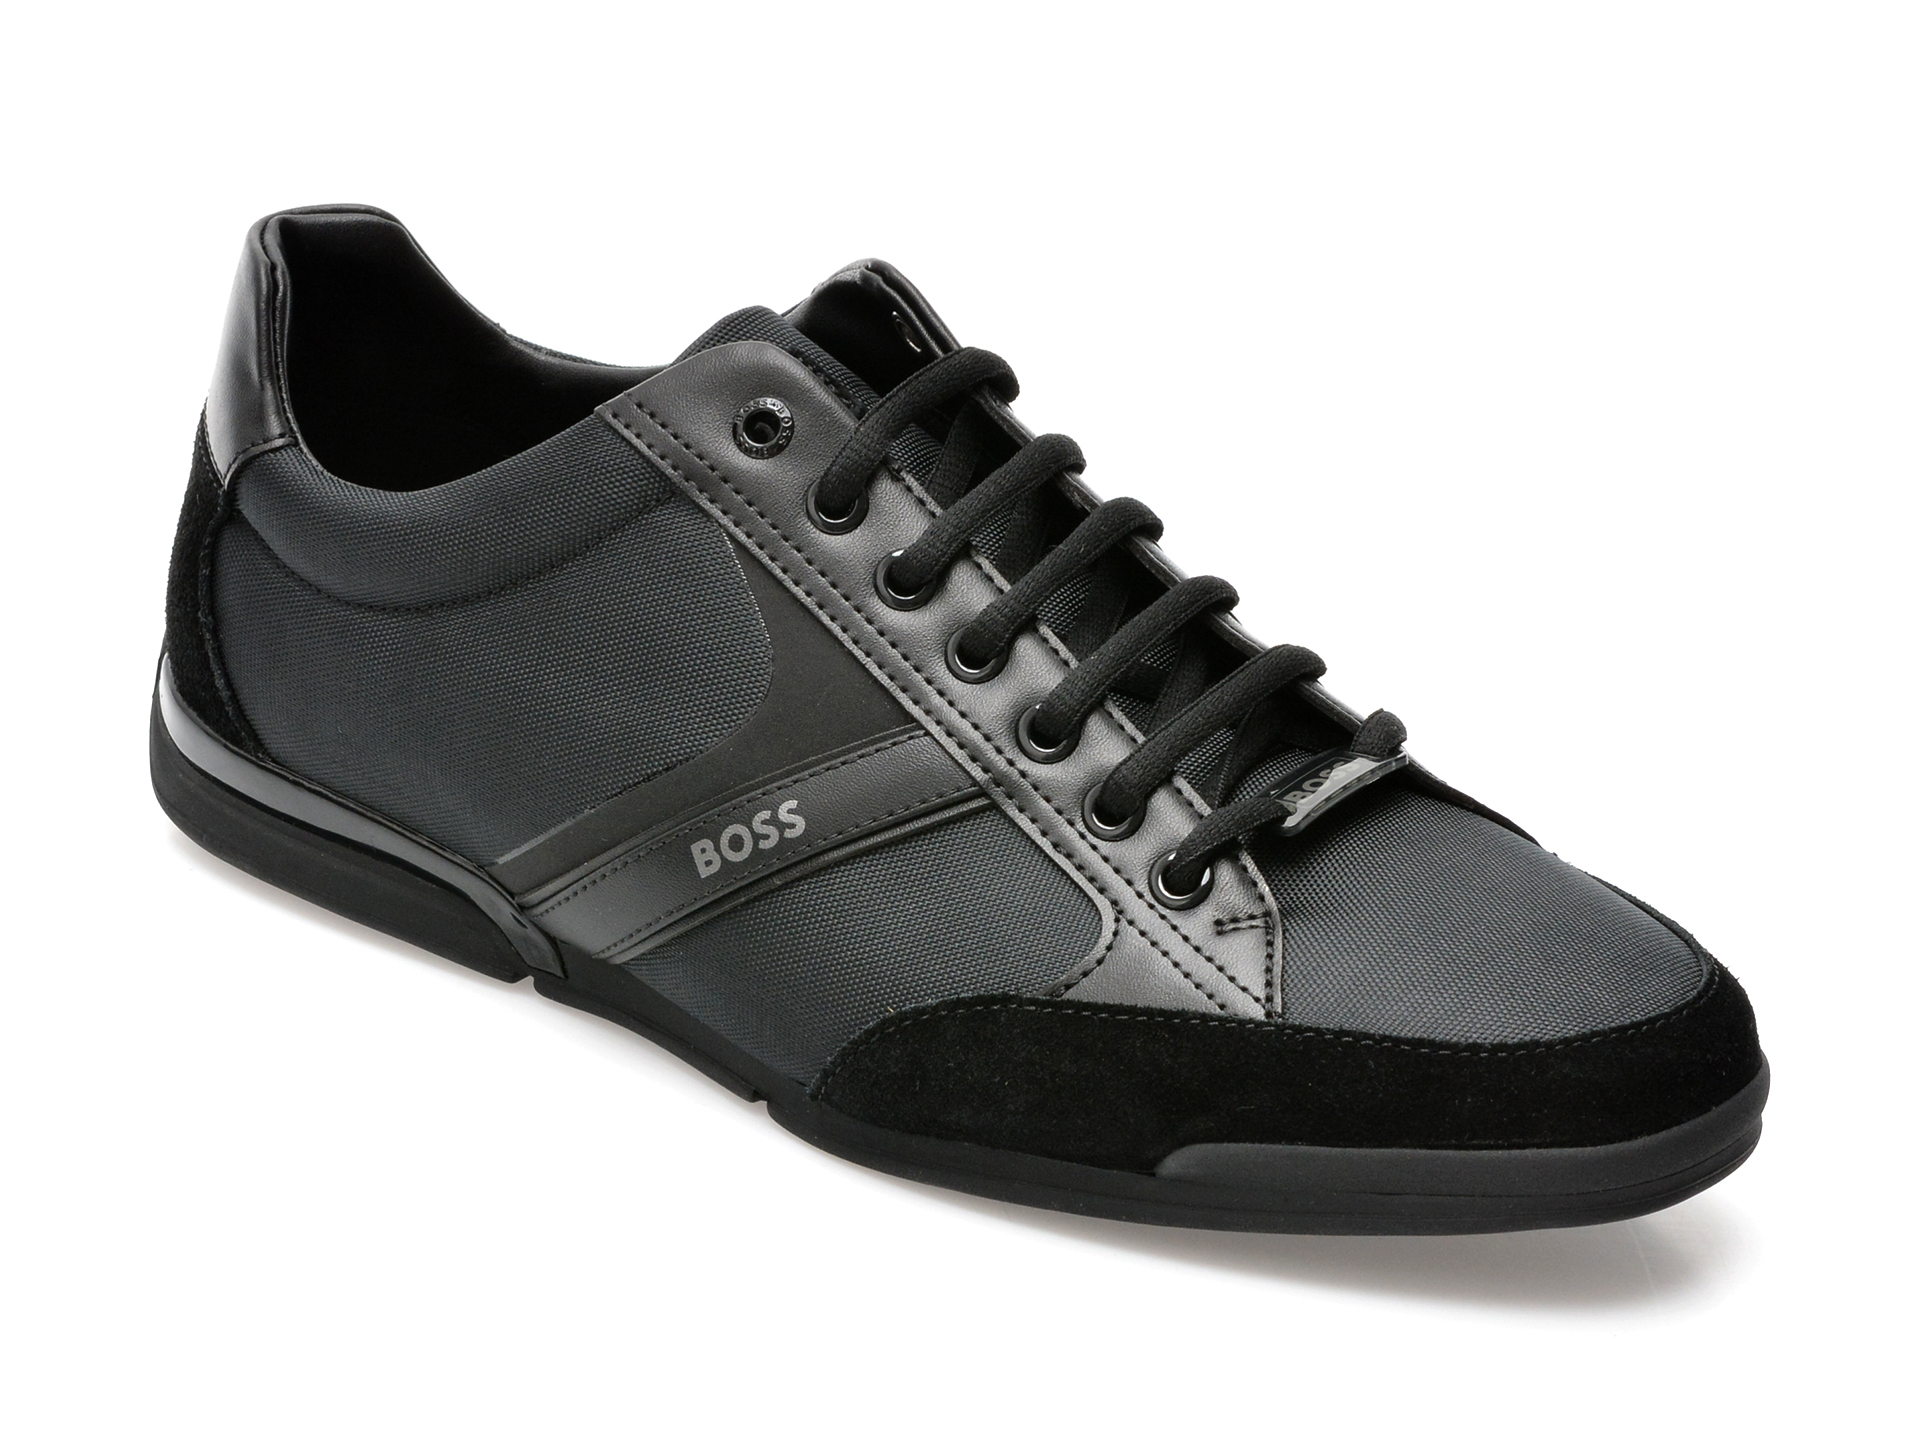 Pantofi sport HUGO BOSS negri, 1235, din material textil si piele naturala /barbati/pantofi /barbati/pantofi